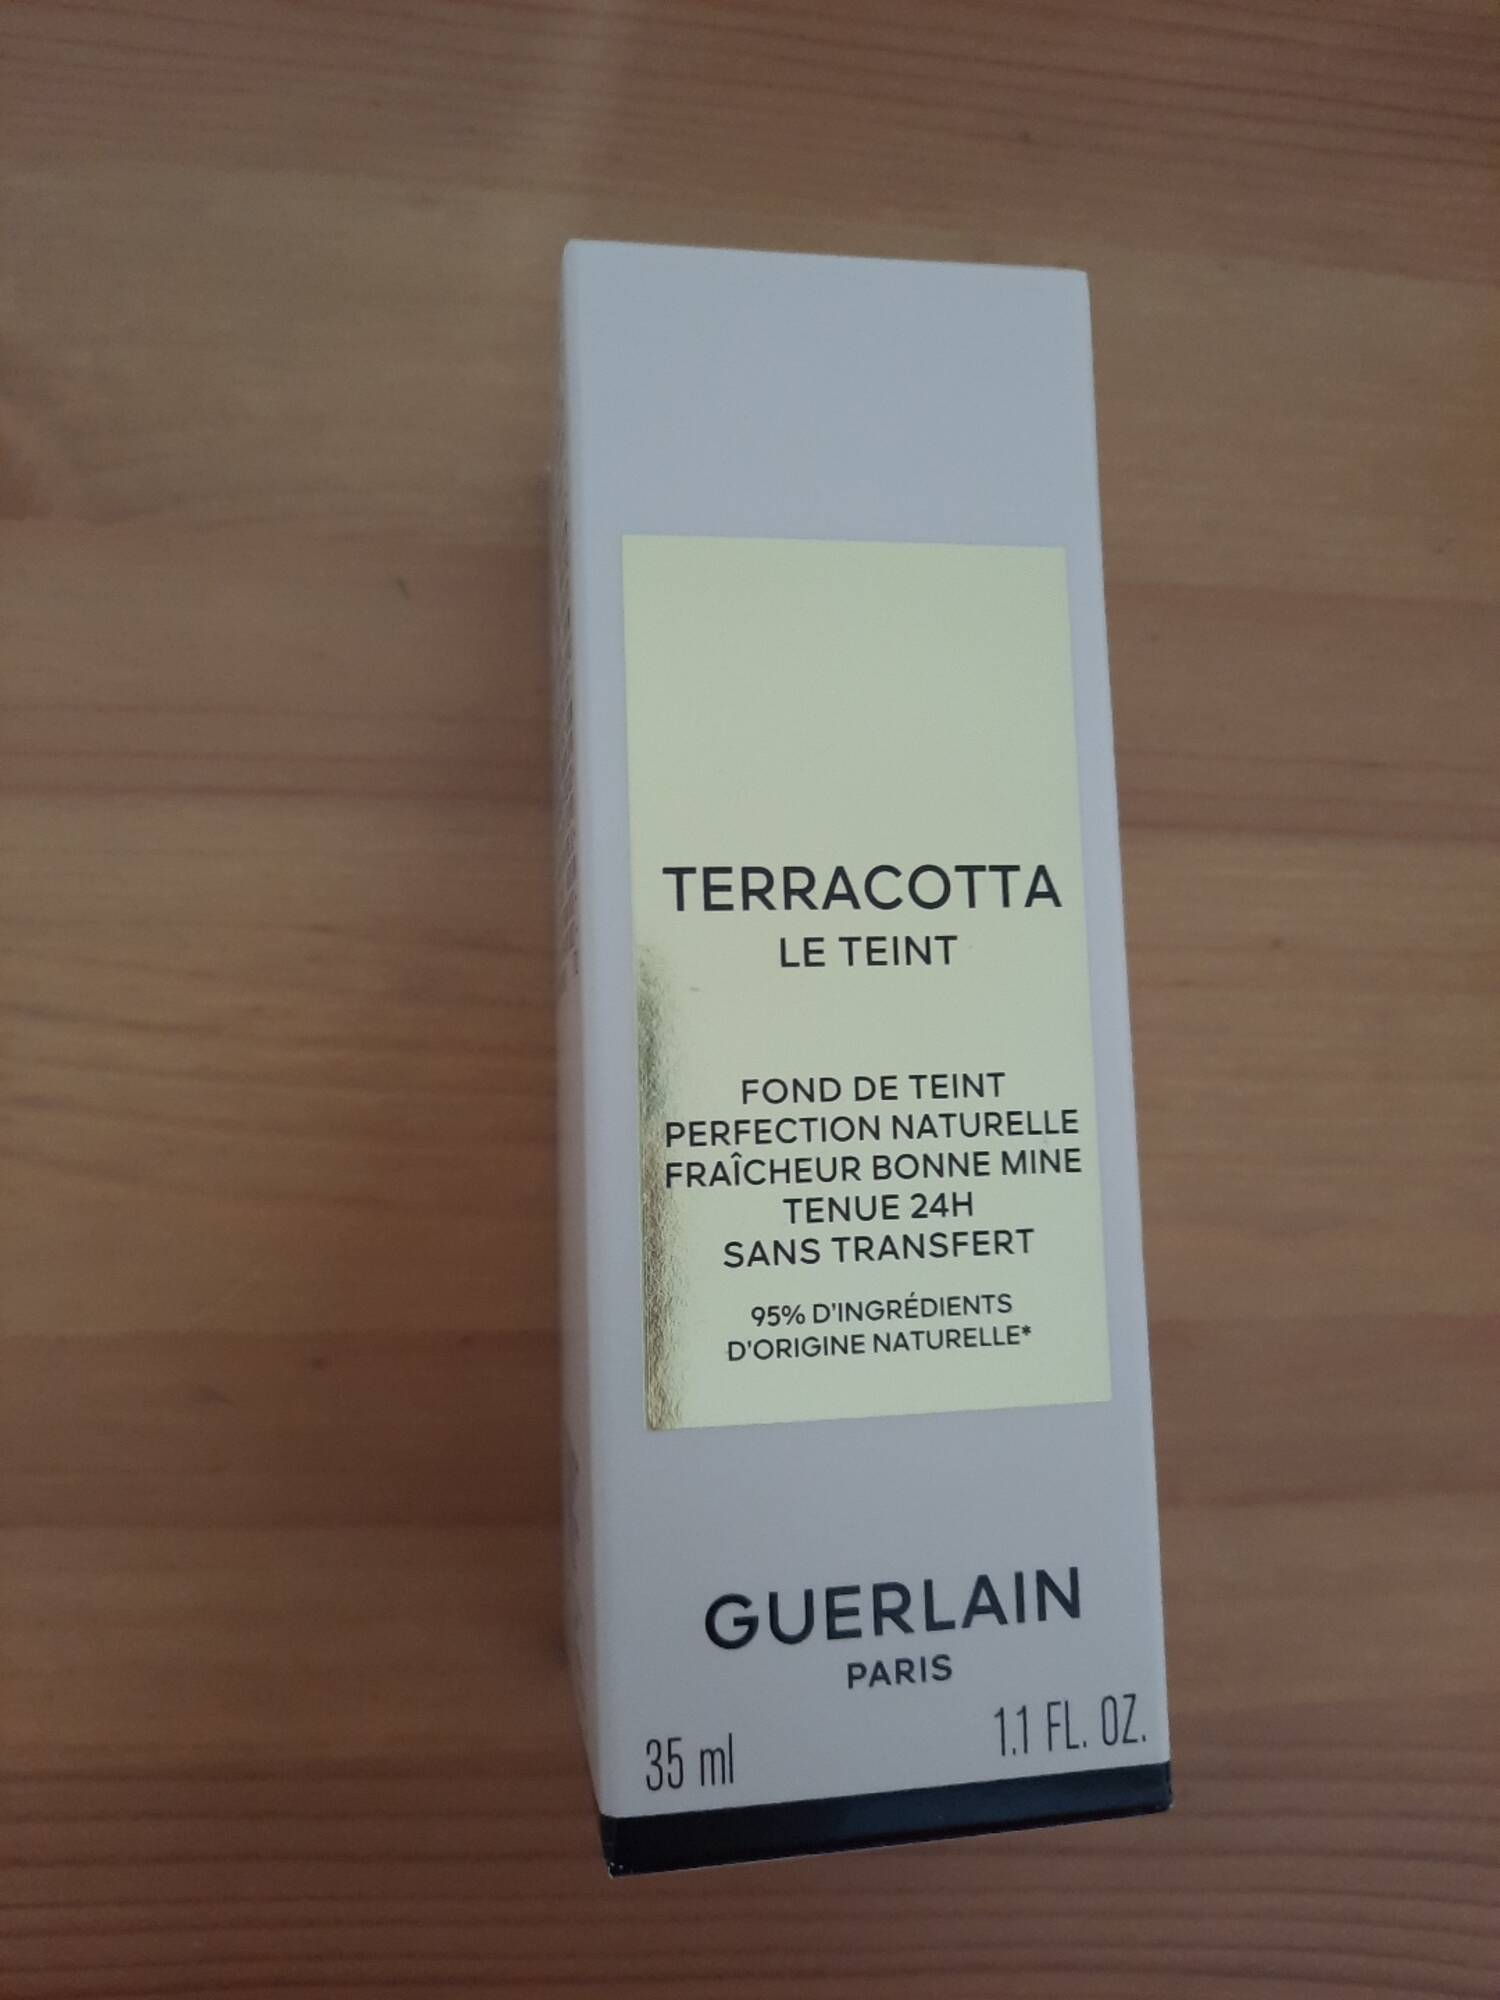 GUERLAIN - Terracotta le teint fond de teint perfection naturelle fraîcheur bonne mine tenue 24h sans transfert